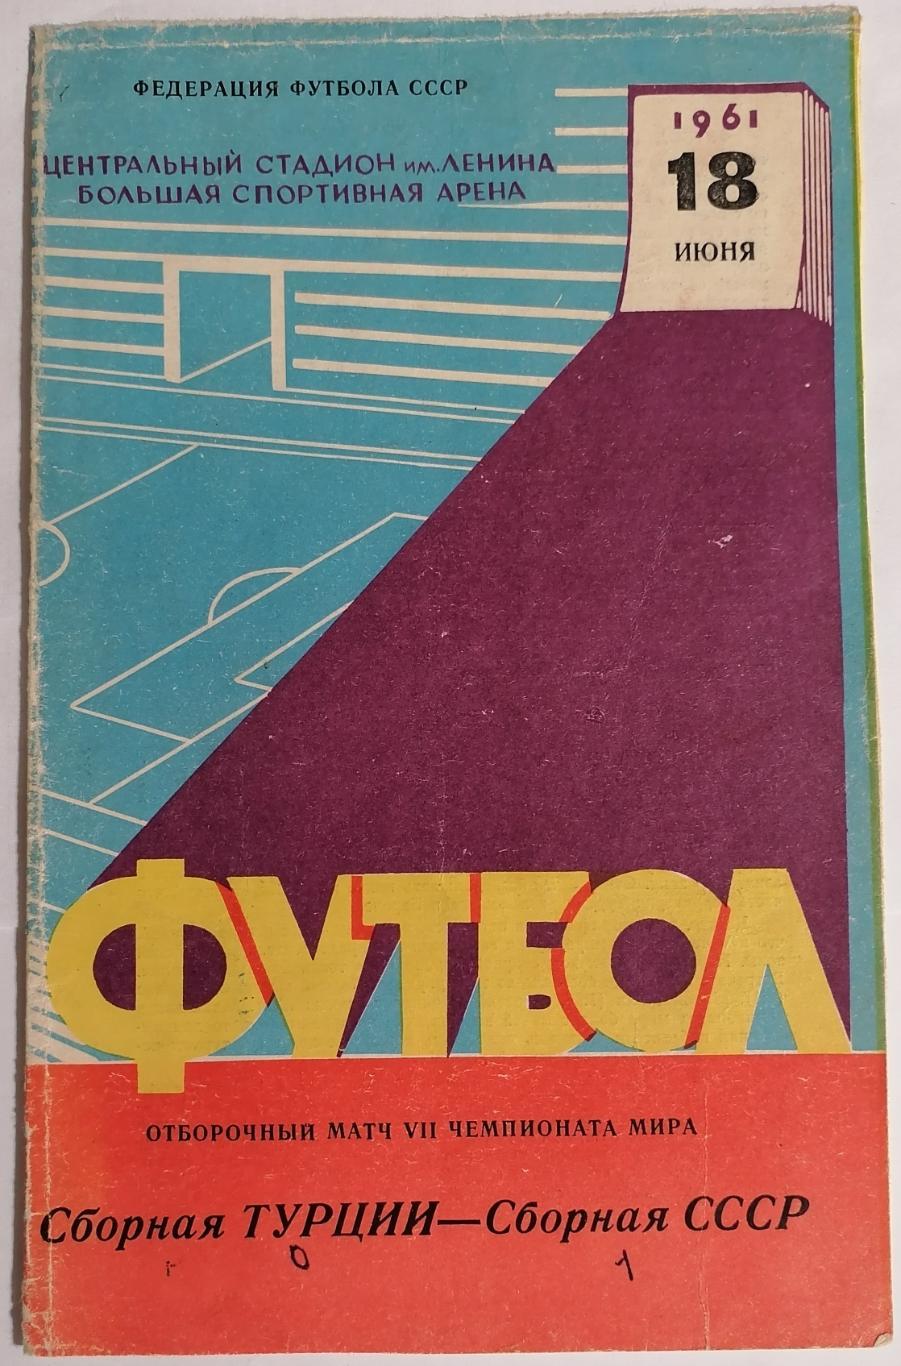 Сборная СССР - ТУРЦИЯ 1961 официальная программа